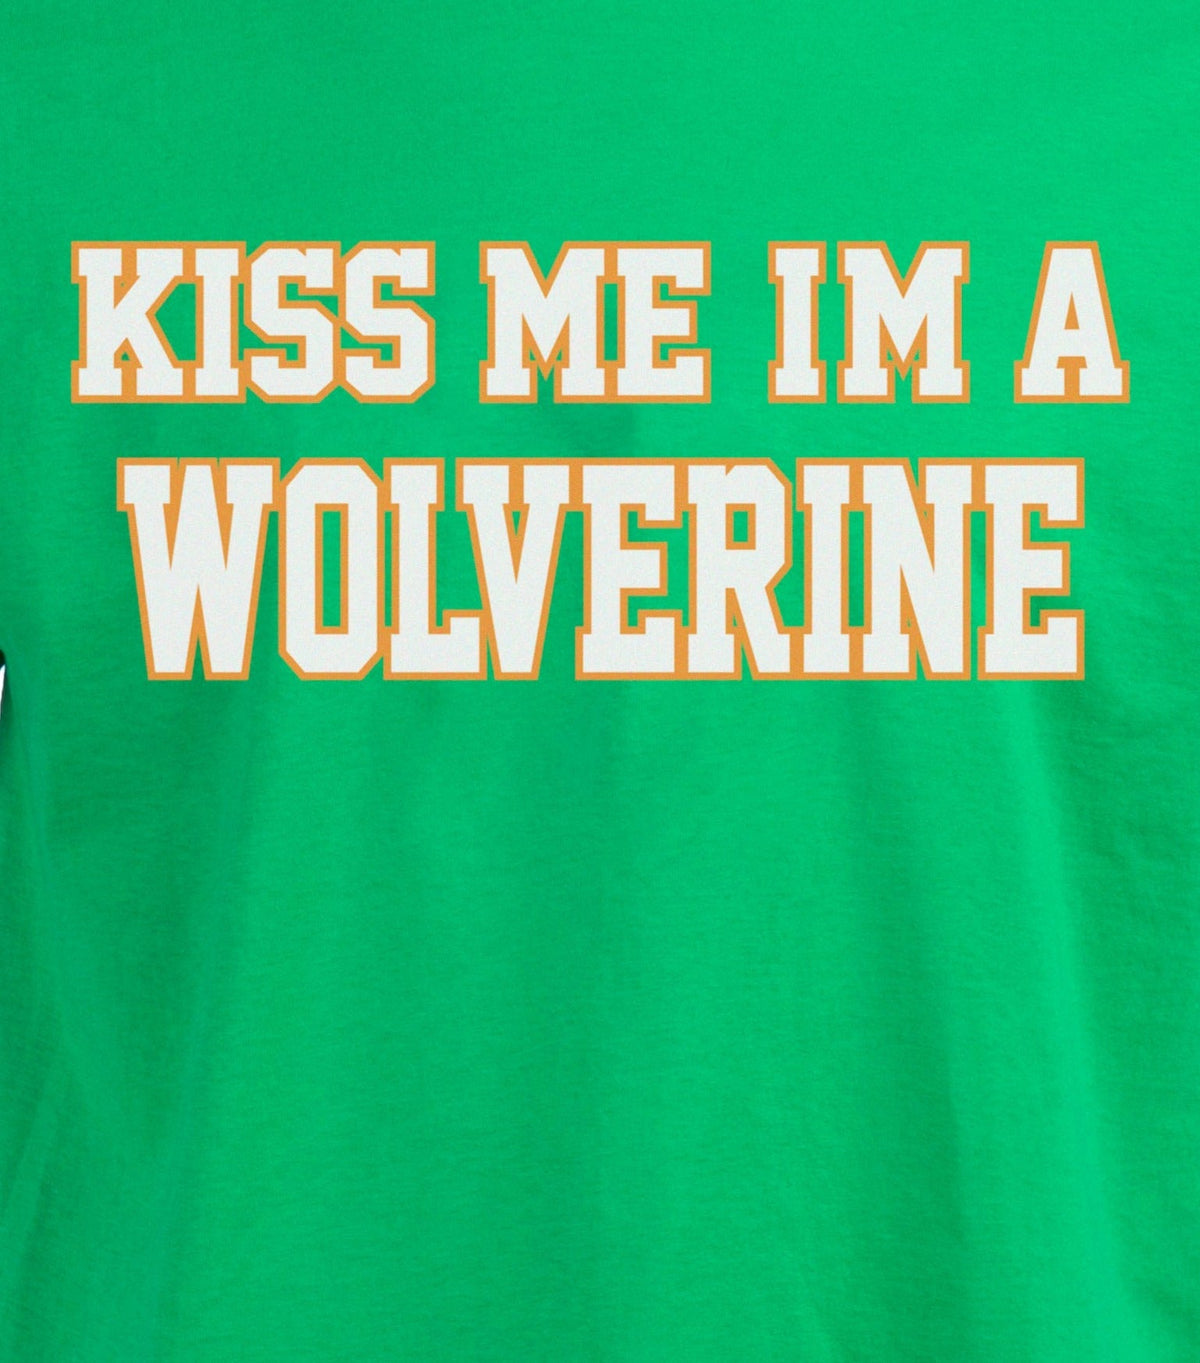 Kiss Me, I'm A Wolverine - St. Patrick's Day Ann Arbor Drunk T-shirt - Men's/Unisex